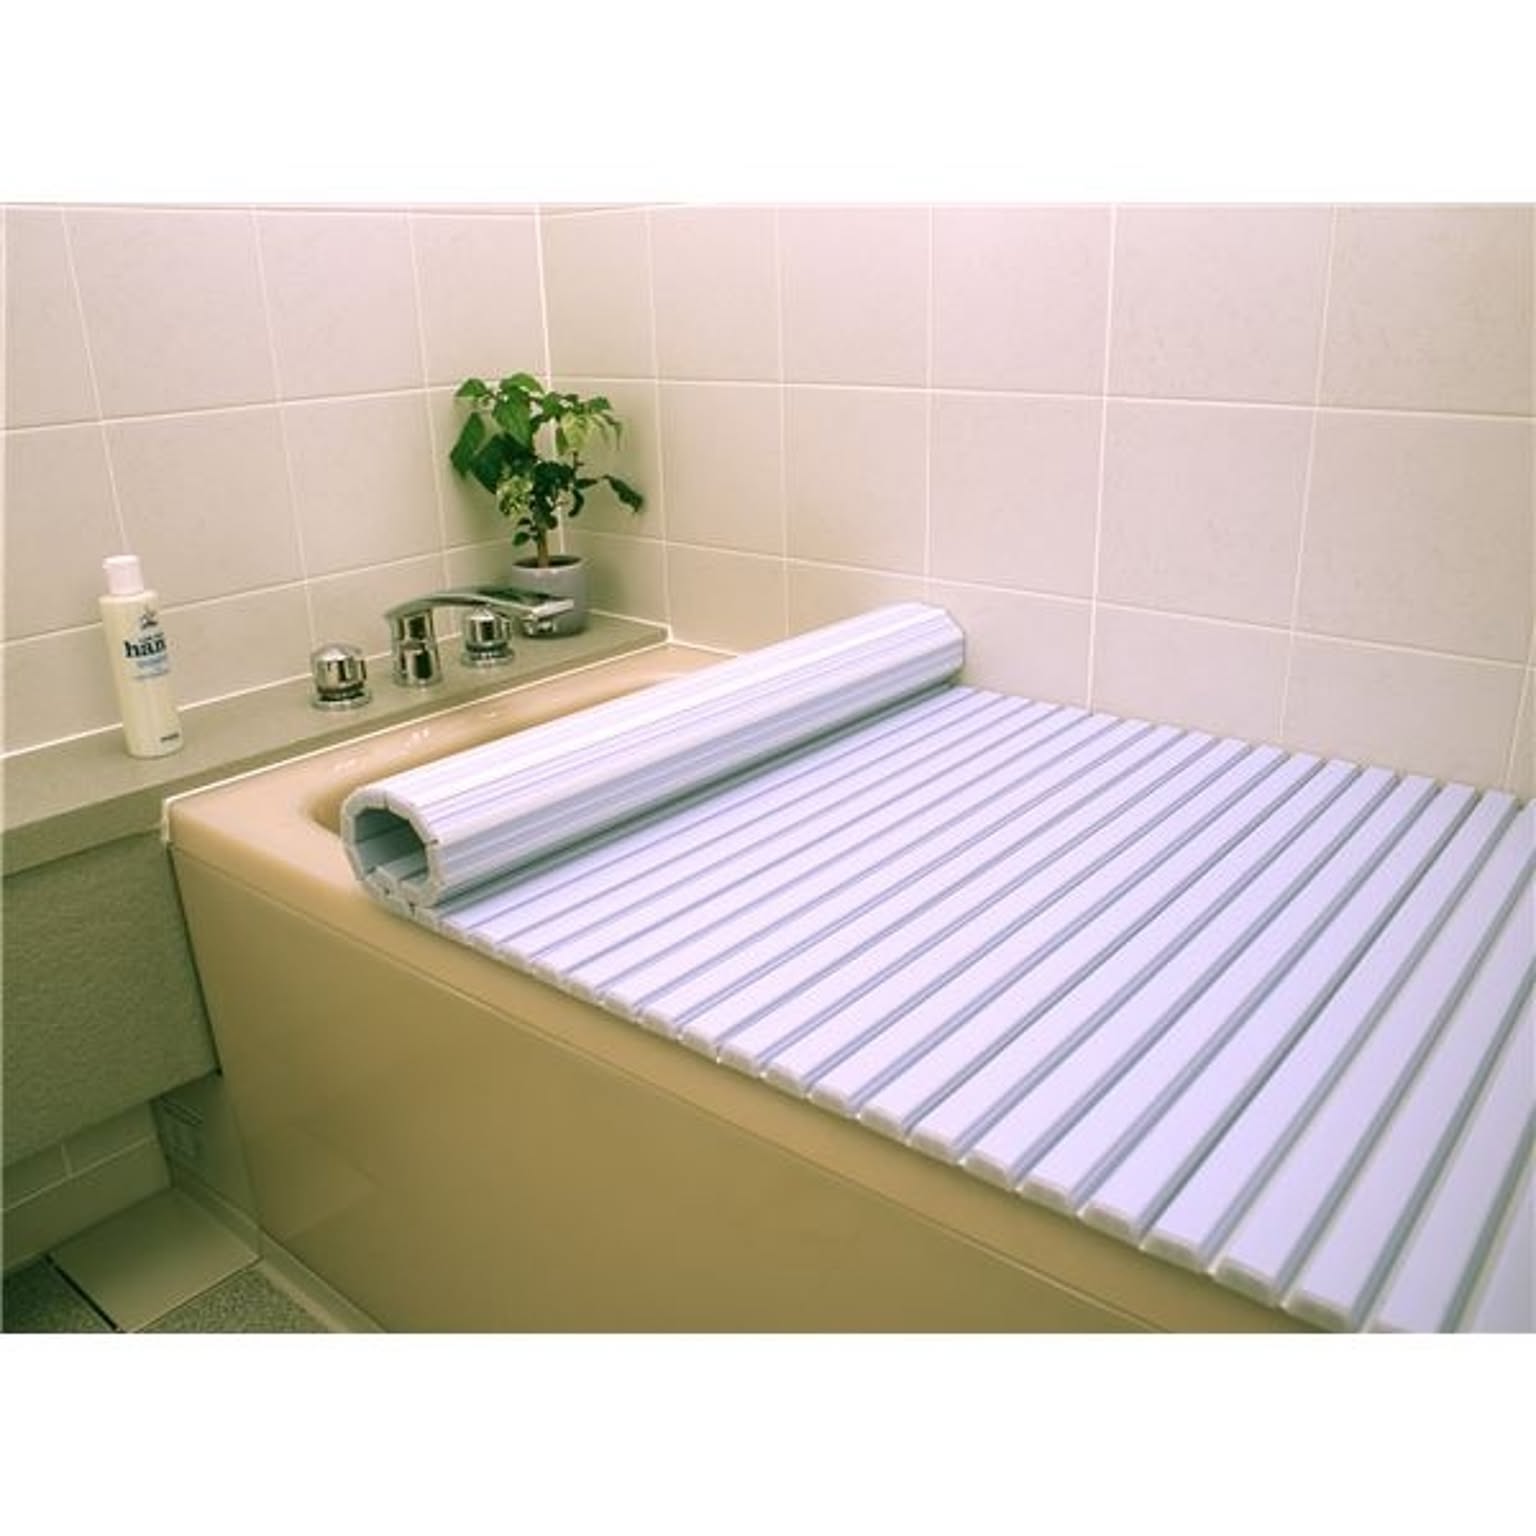 〔6個セット〕 風呂ふた 風呂フタ 70cm×100cm用 ブルー 軽量 シャッター式 巻きフタ SGマーク認定 日本製 浴室 風呂